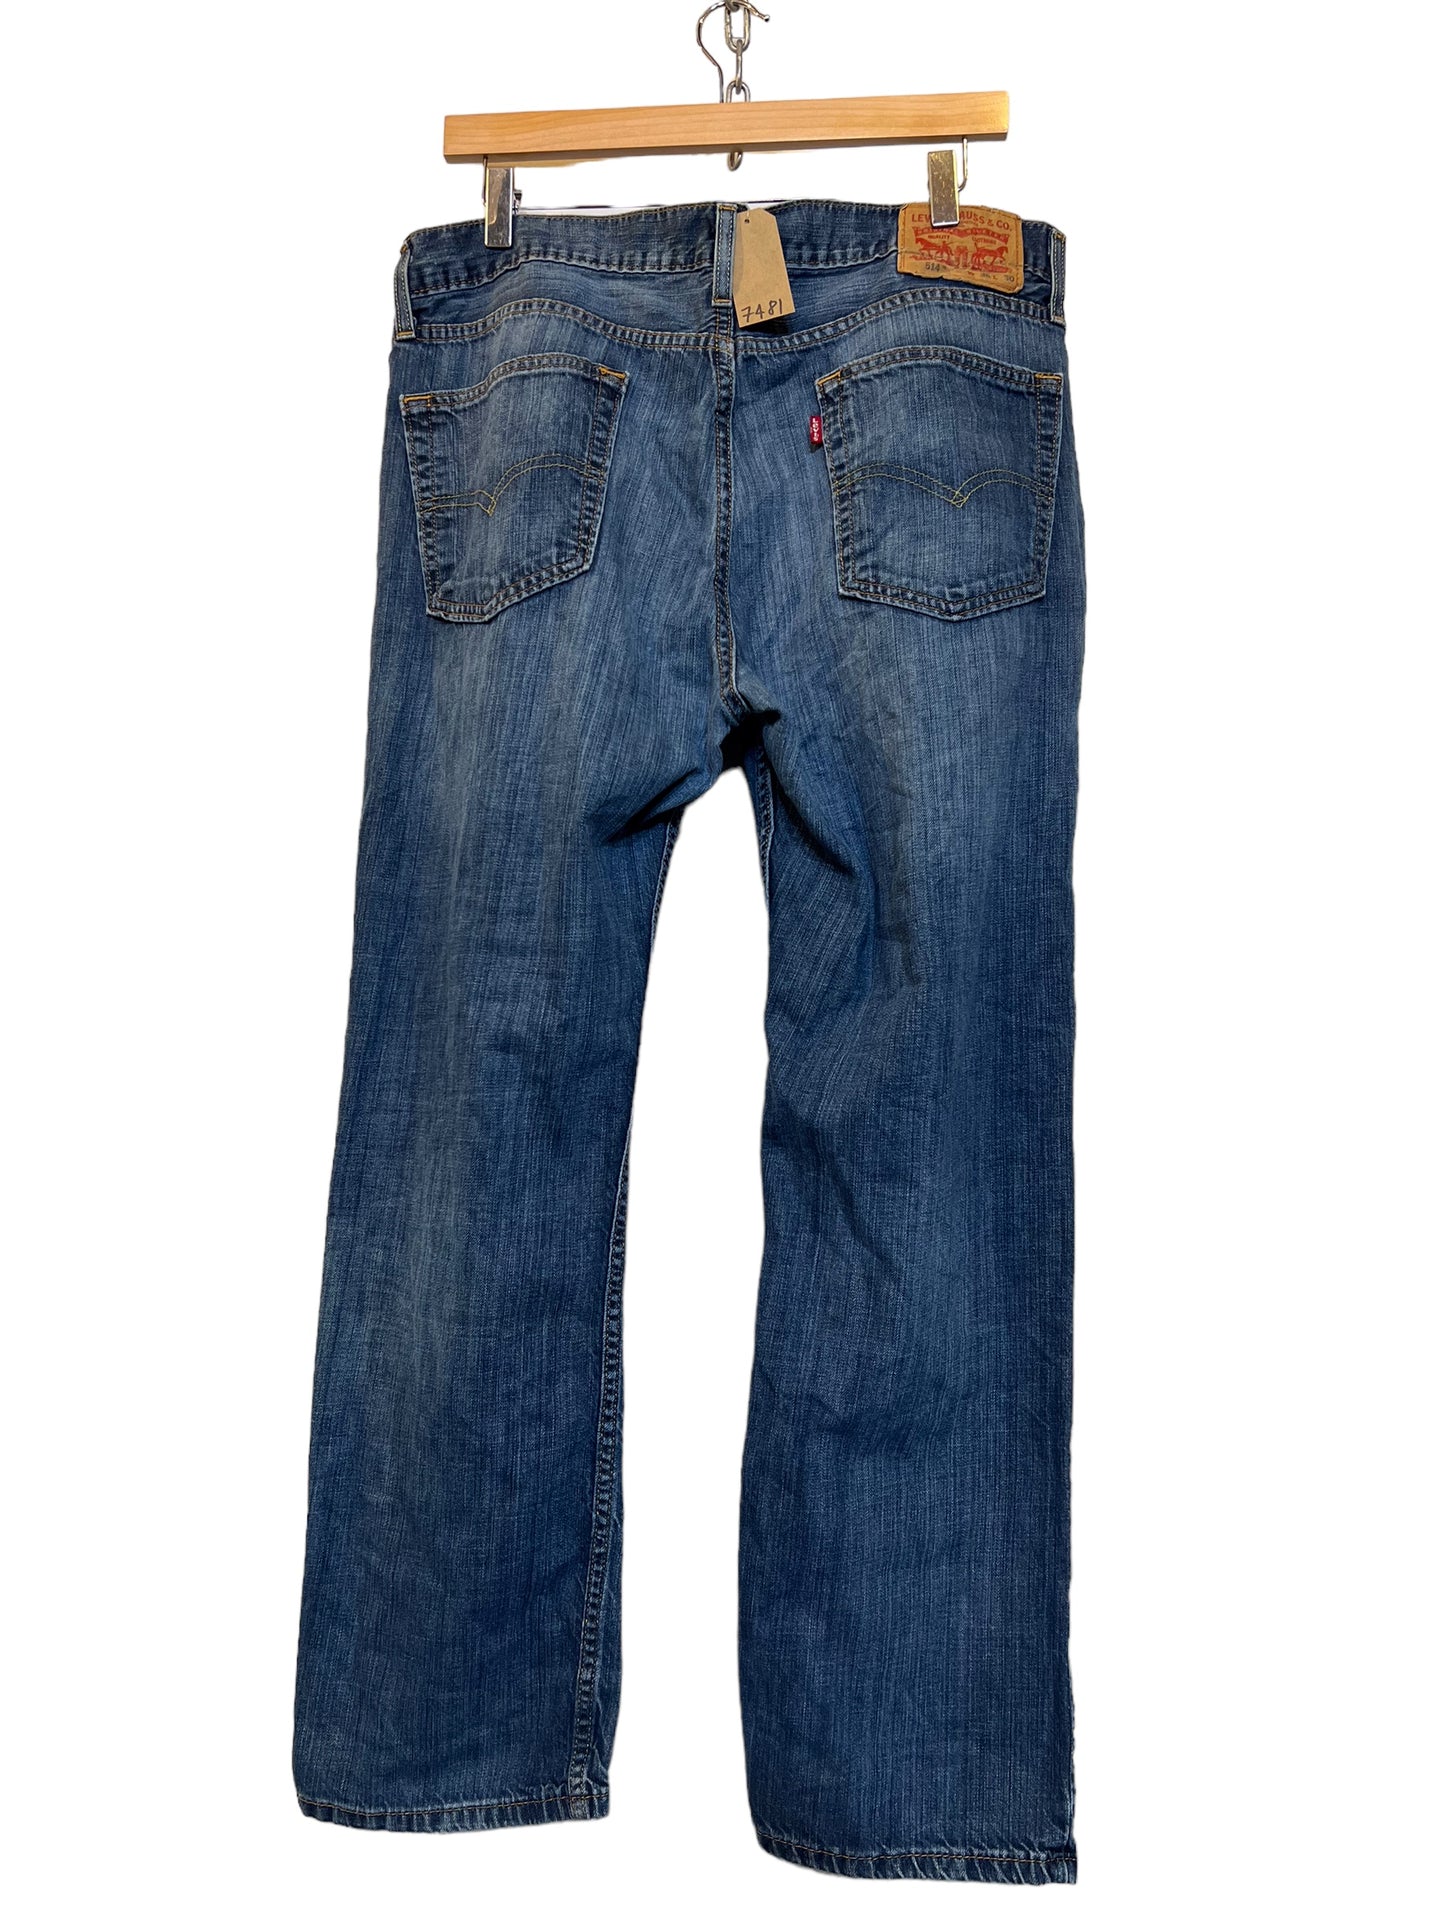 Levi 514 jeans (36x30)